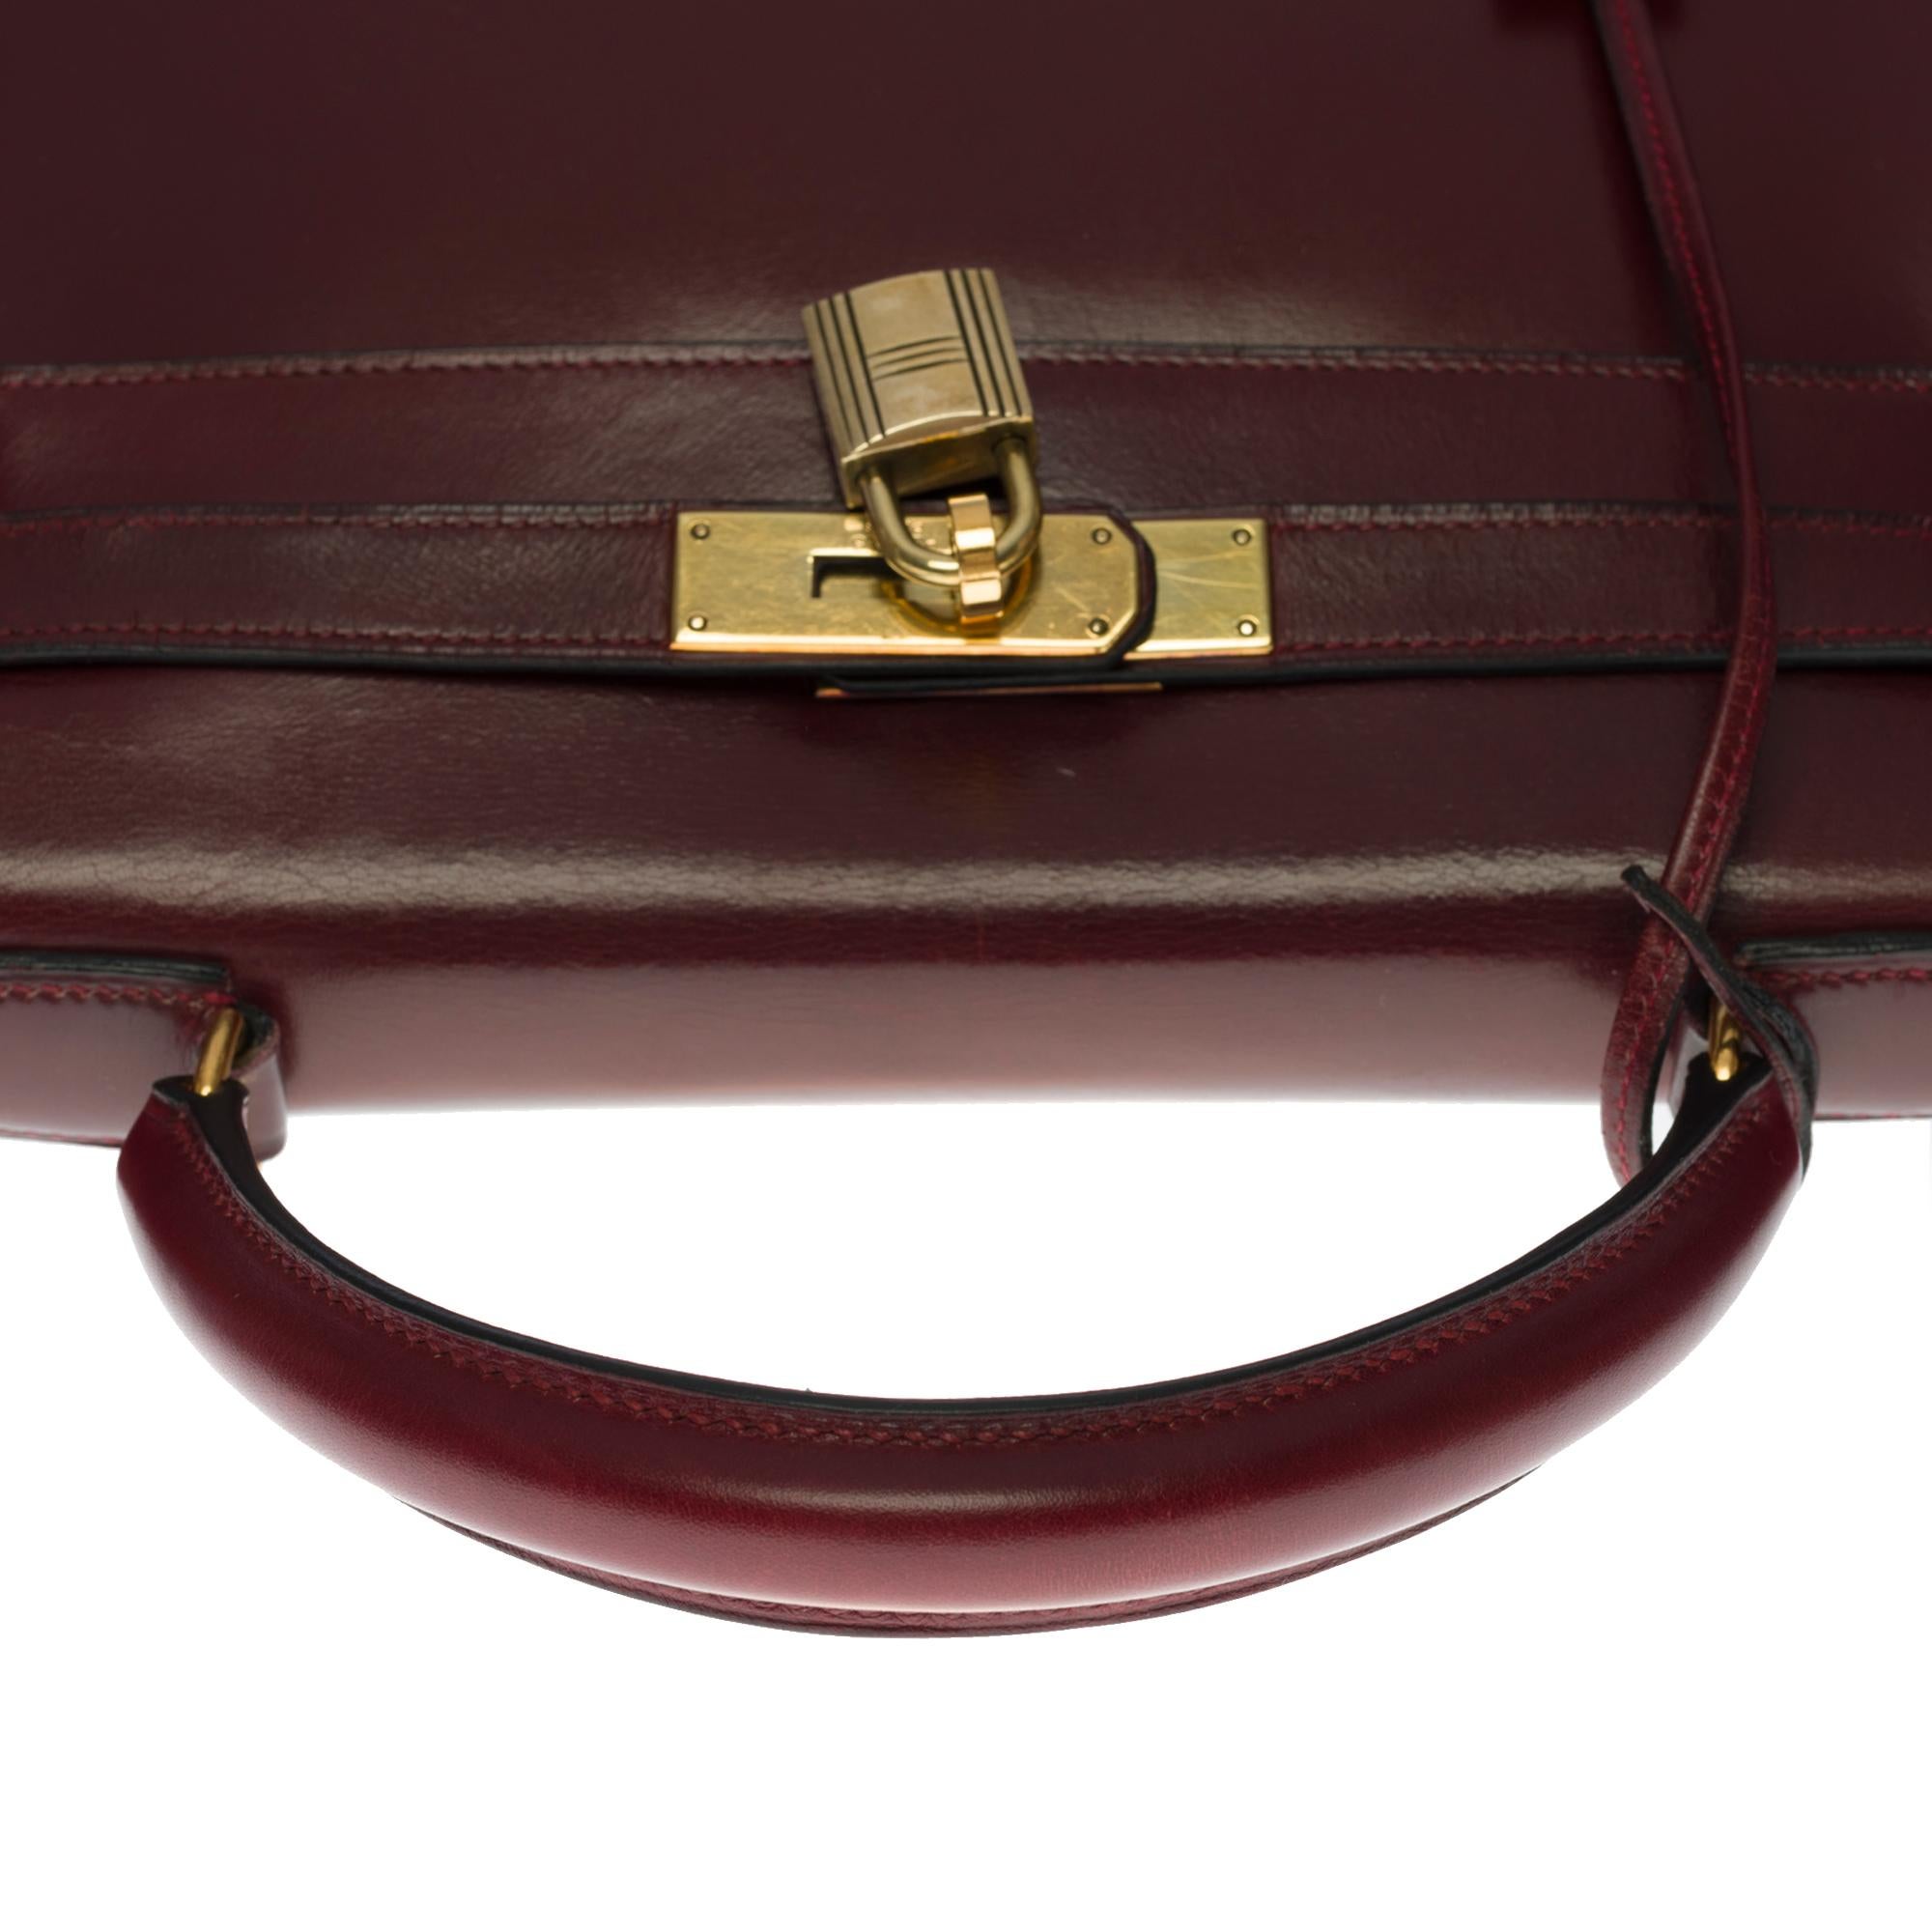 Women's Hermes Kelly 28 retourne handbag strap in Rouge H (Burgundy) box calfskin, GHW